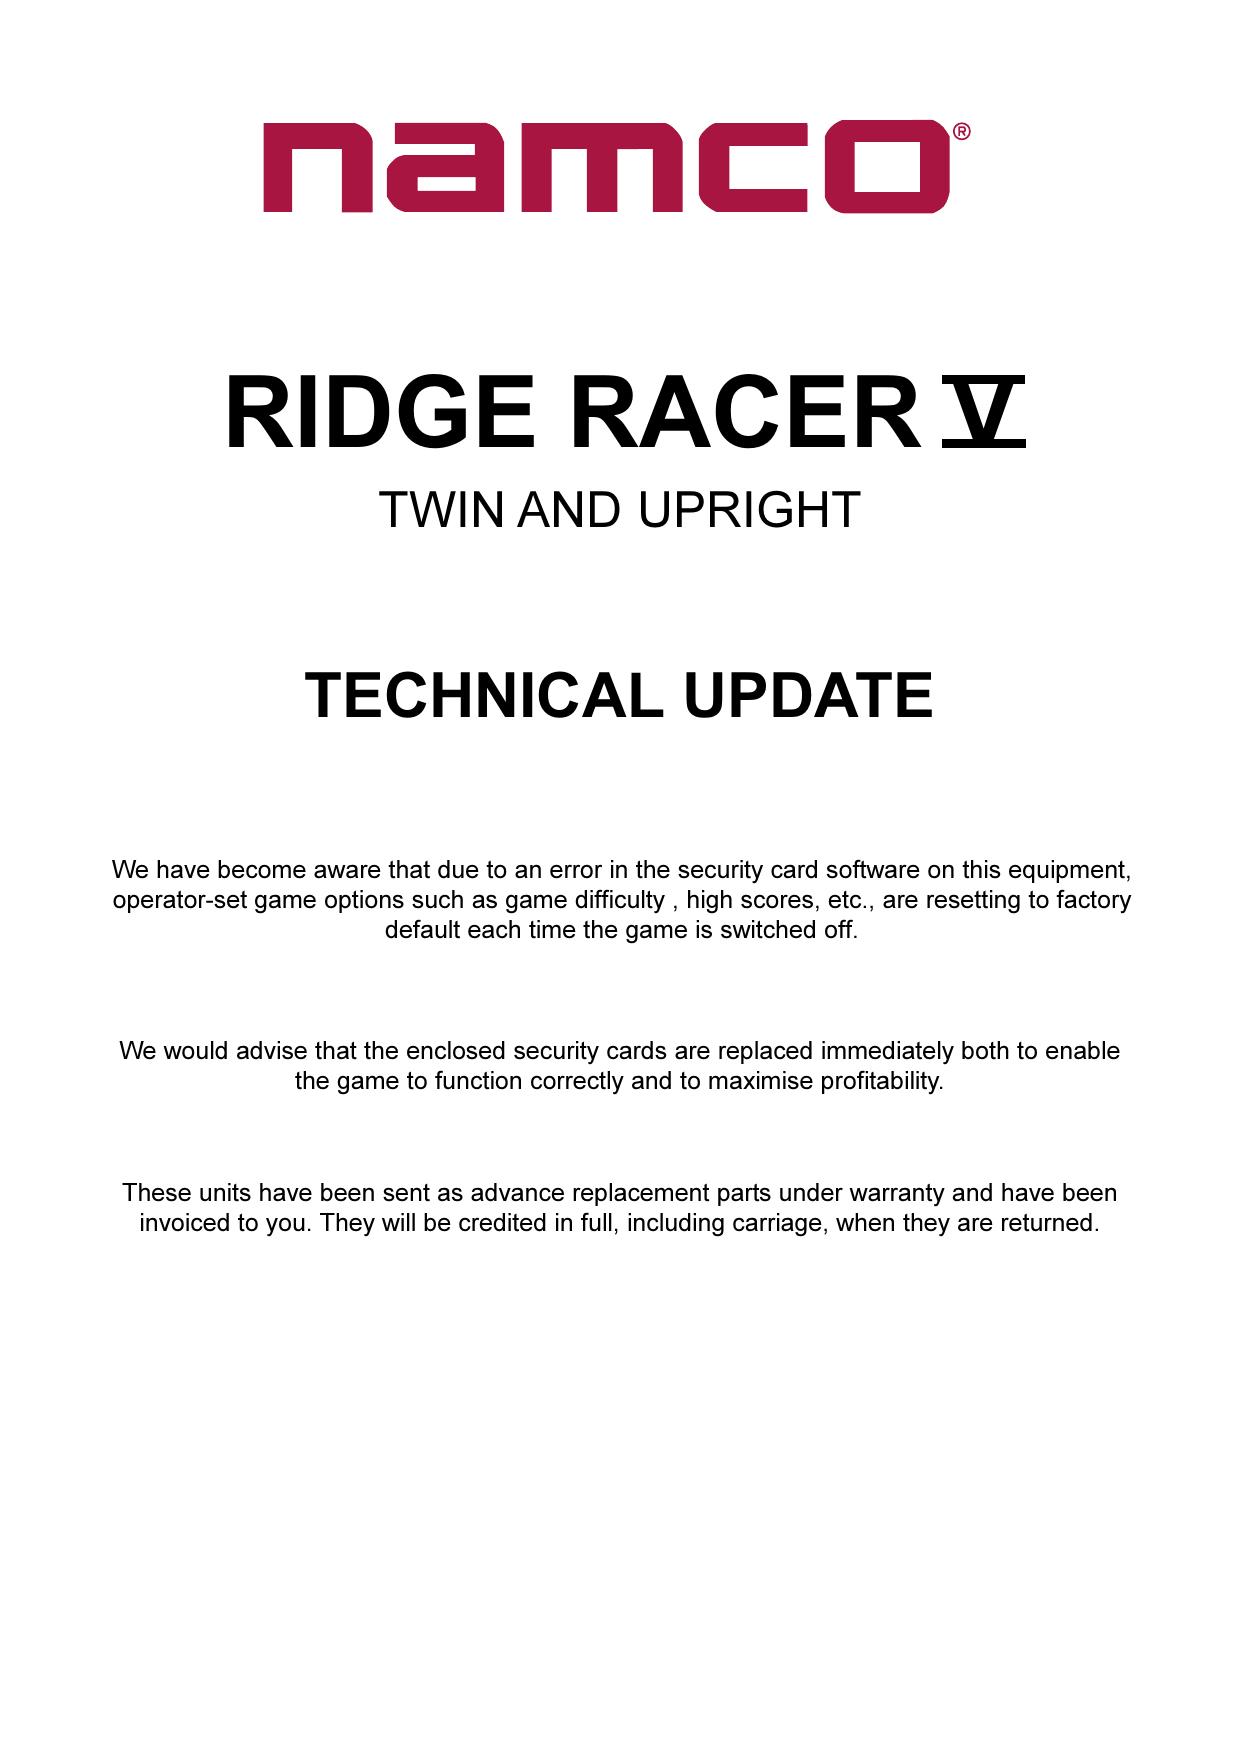 Technical Update